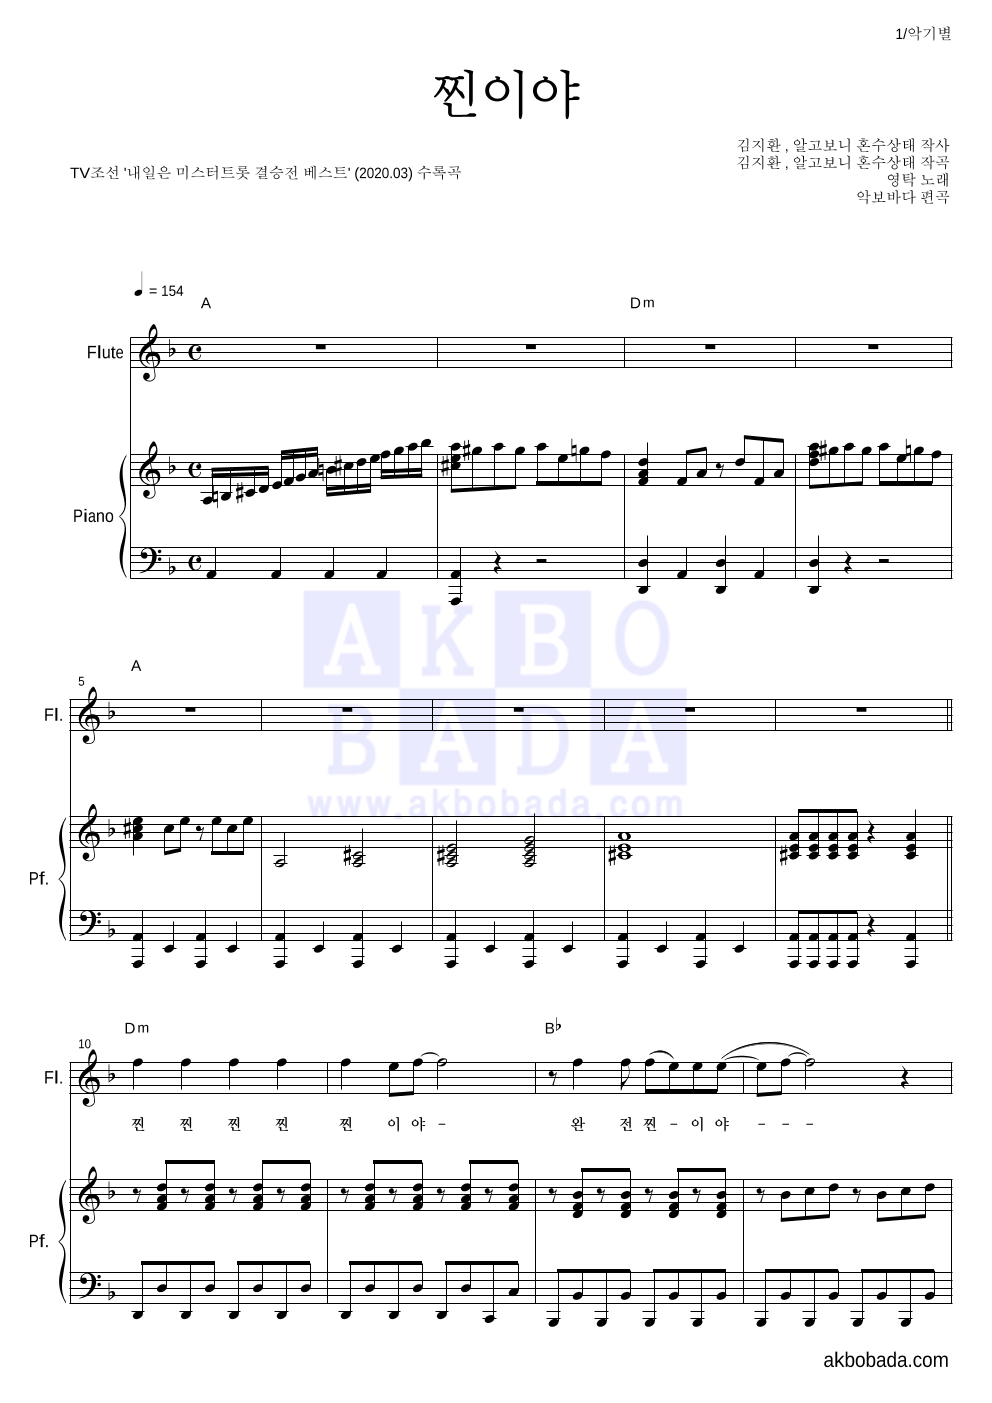 영탁 - 찐이야 플룻&피아노 악보 